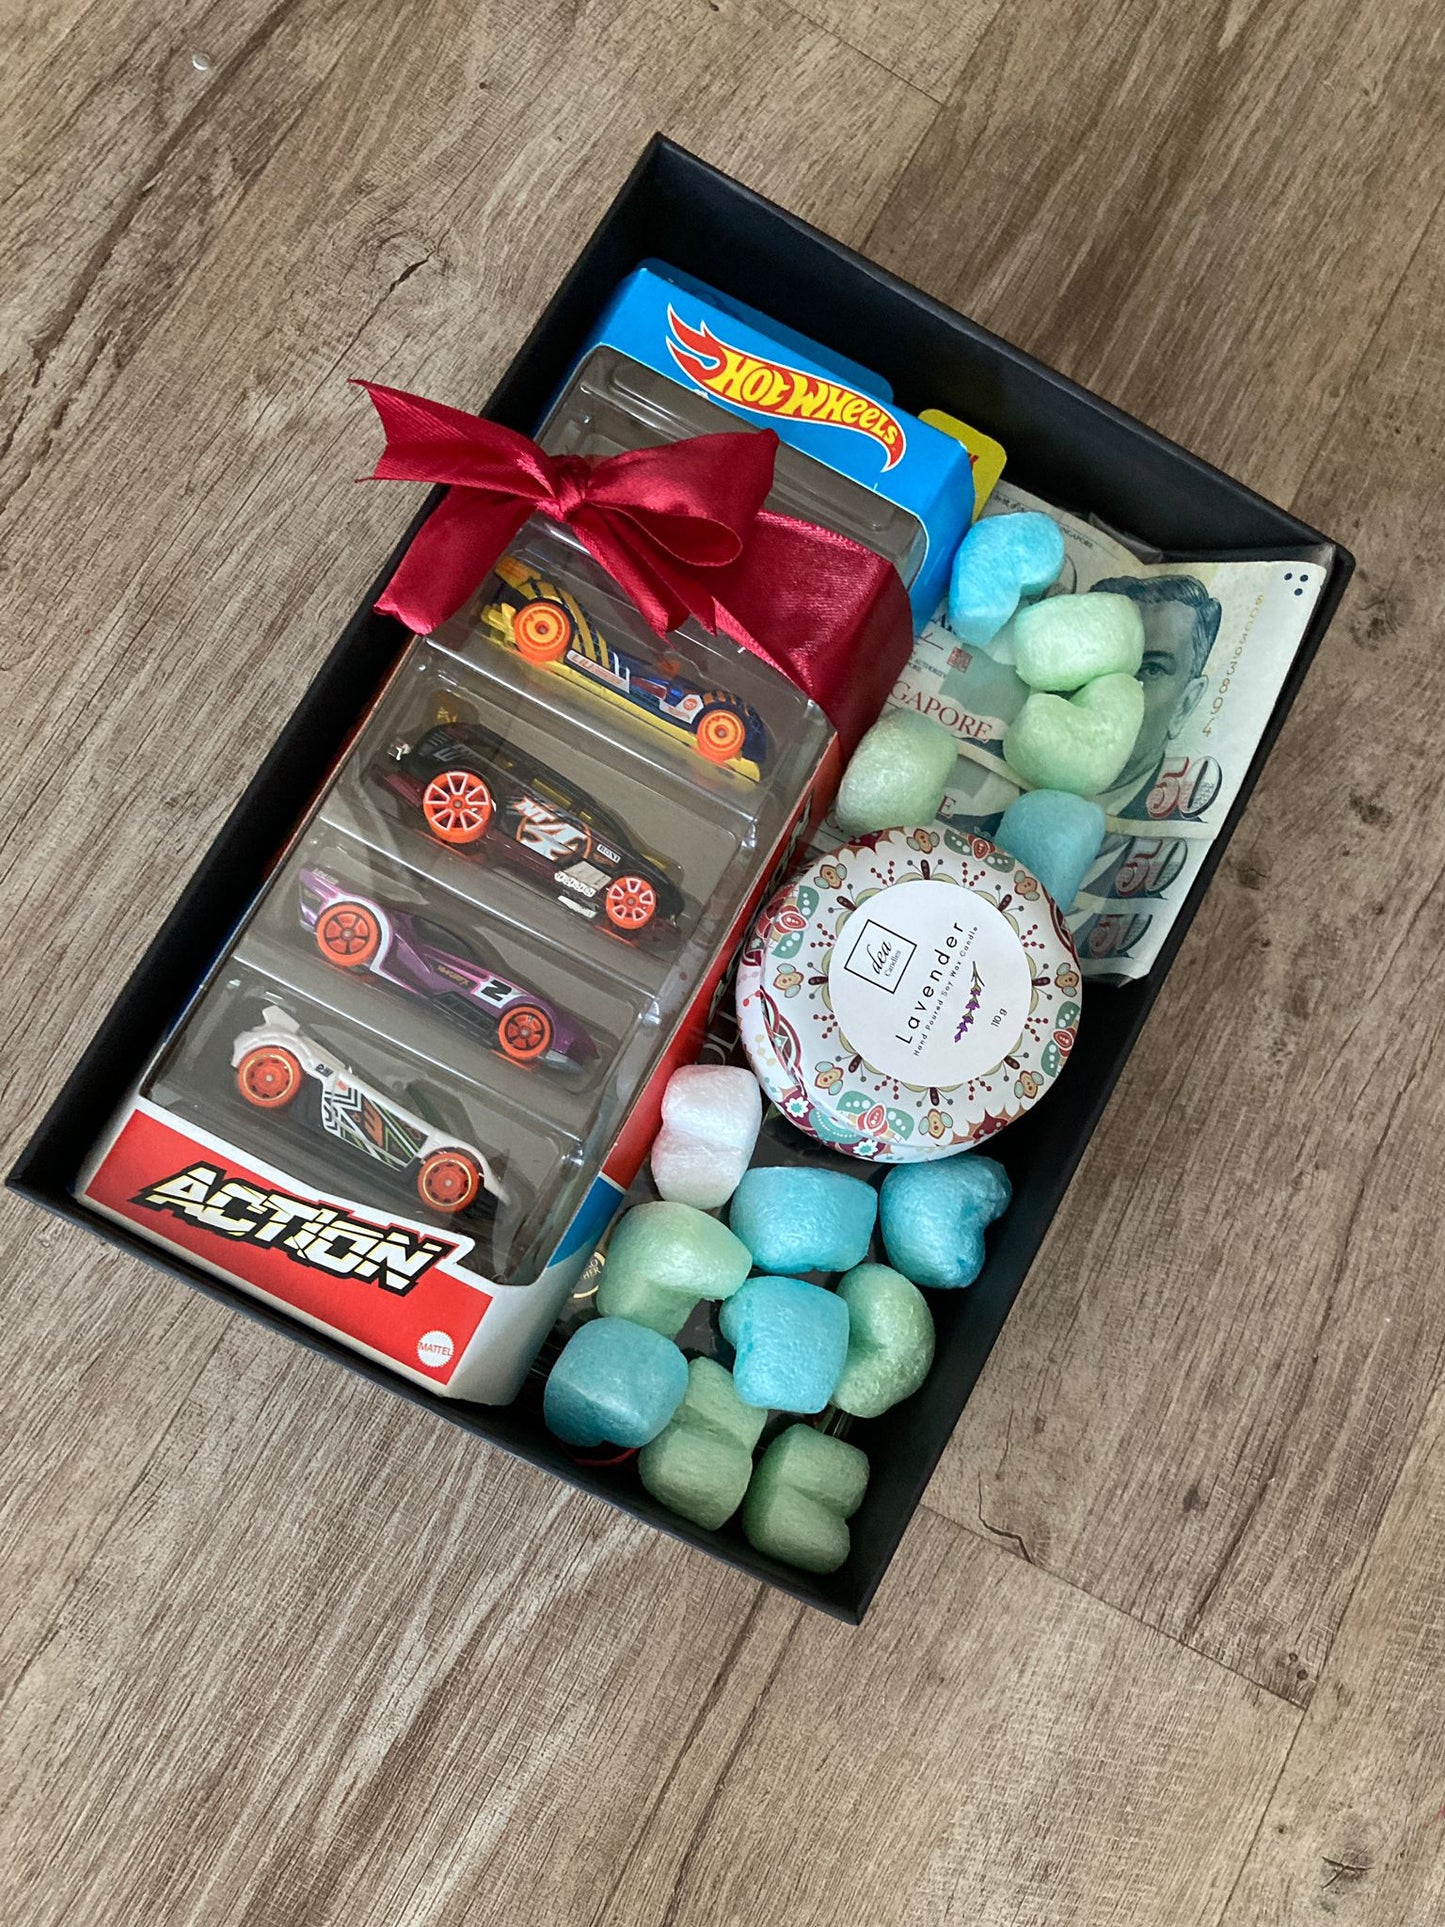 The Fun Box Gift Set